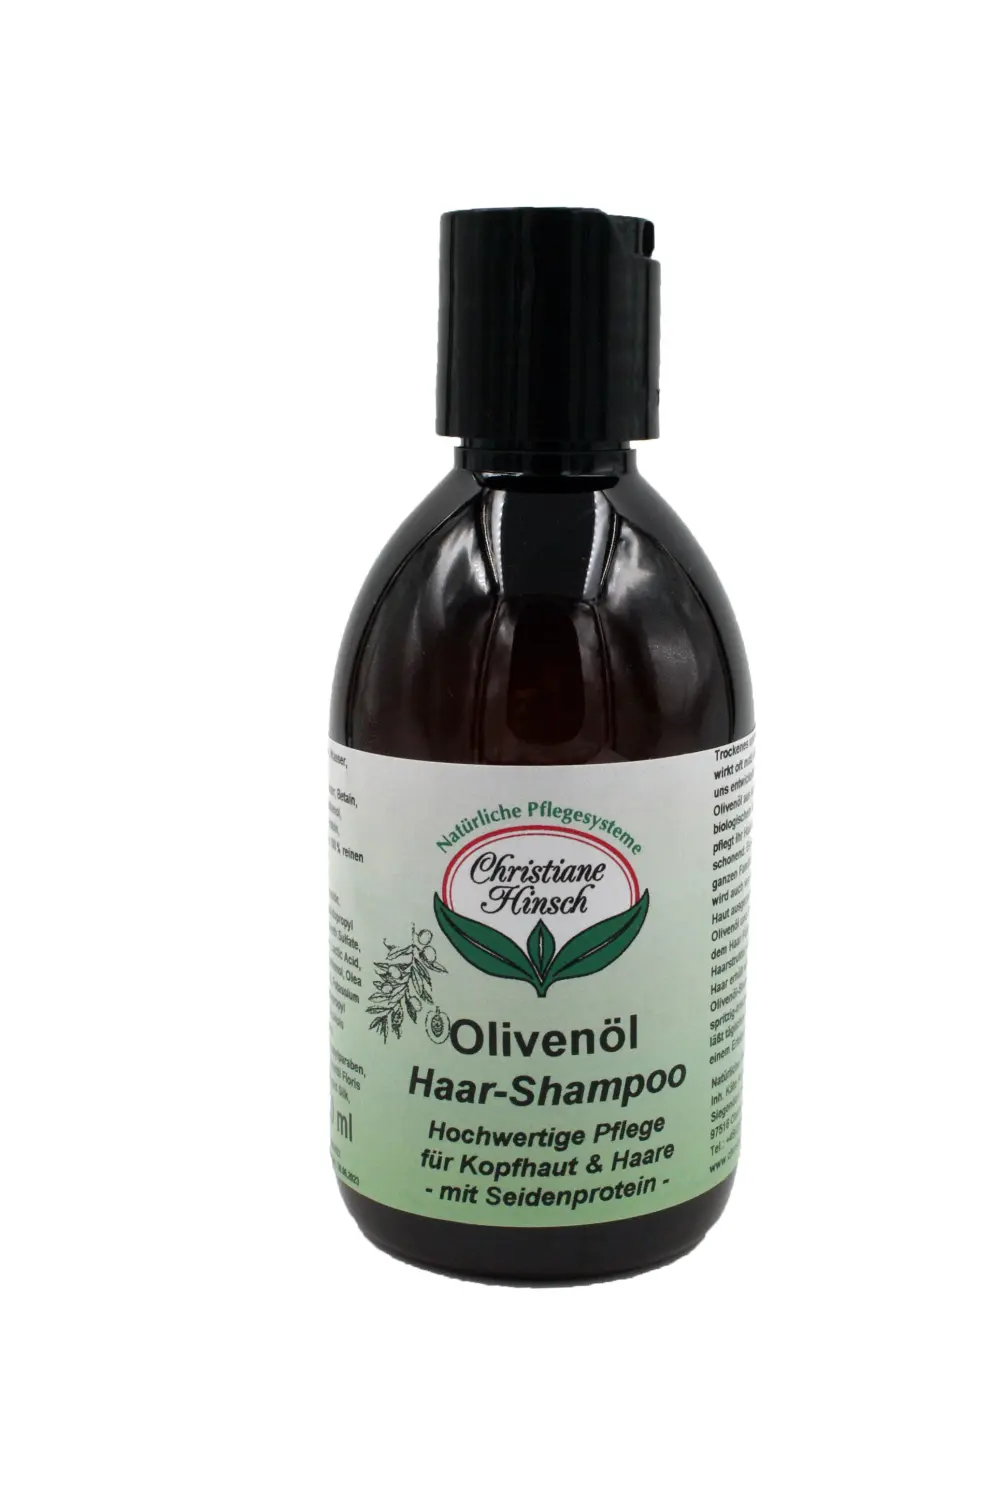 Natürliche Pflegesysteme Christiane Hinsch Olivenöl Shampoo